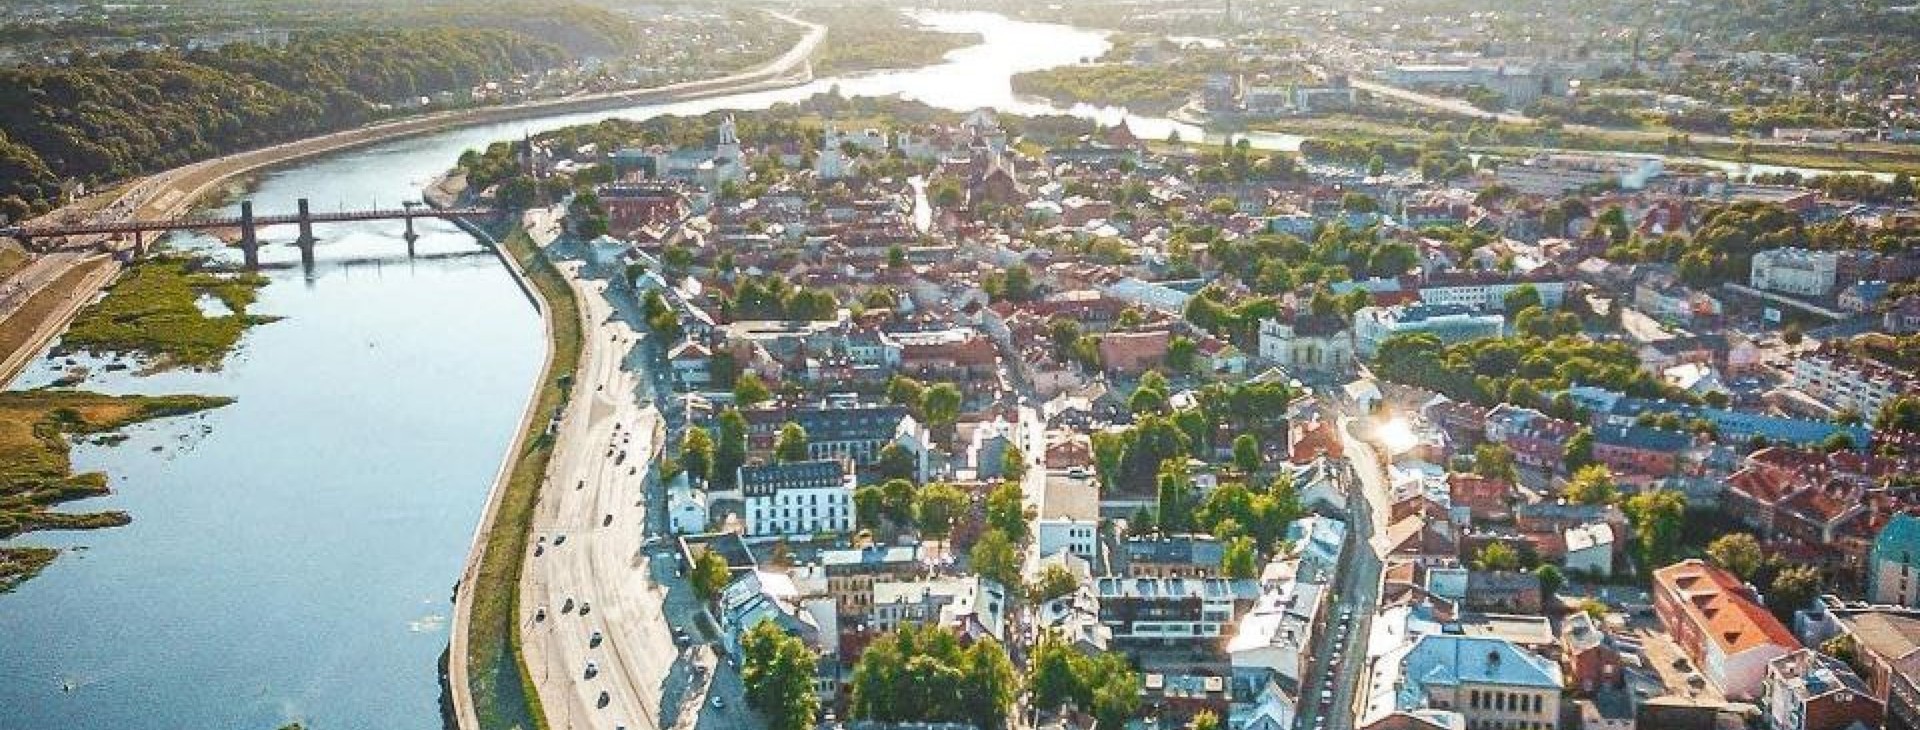 Immagine di Kaunas, Lituania, con in vista il fiume e il centro storico